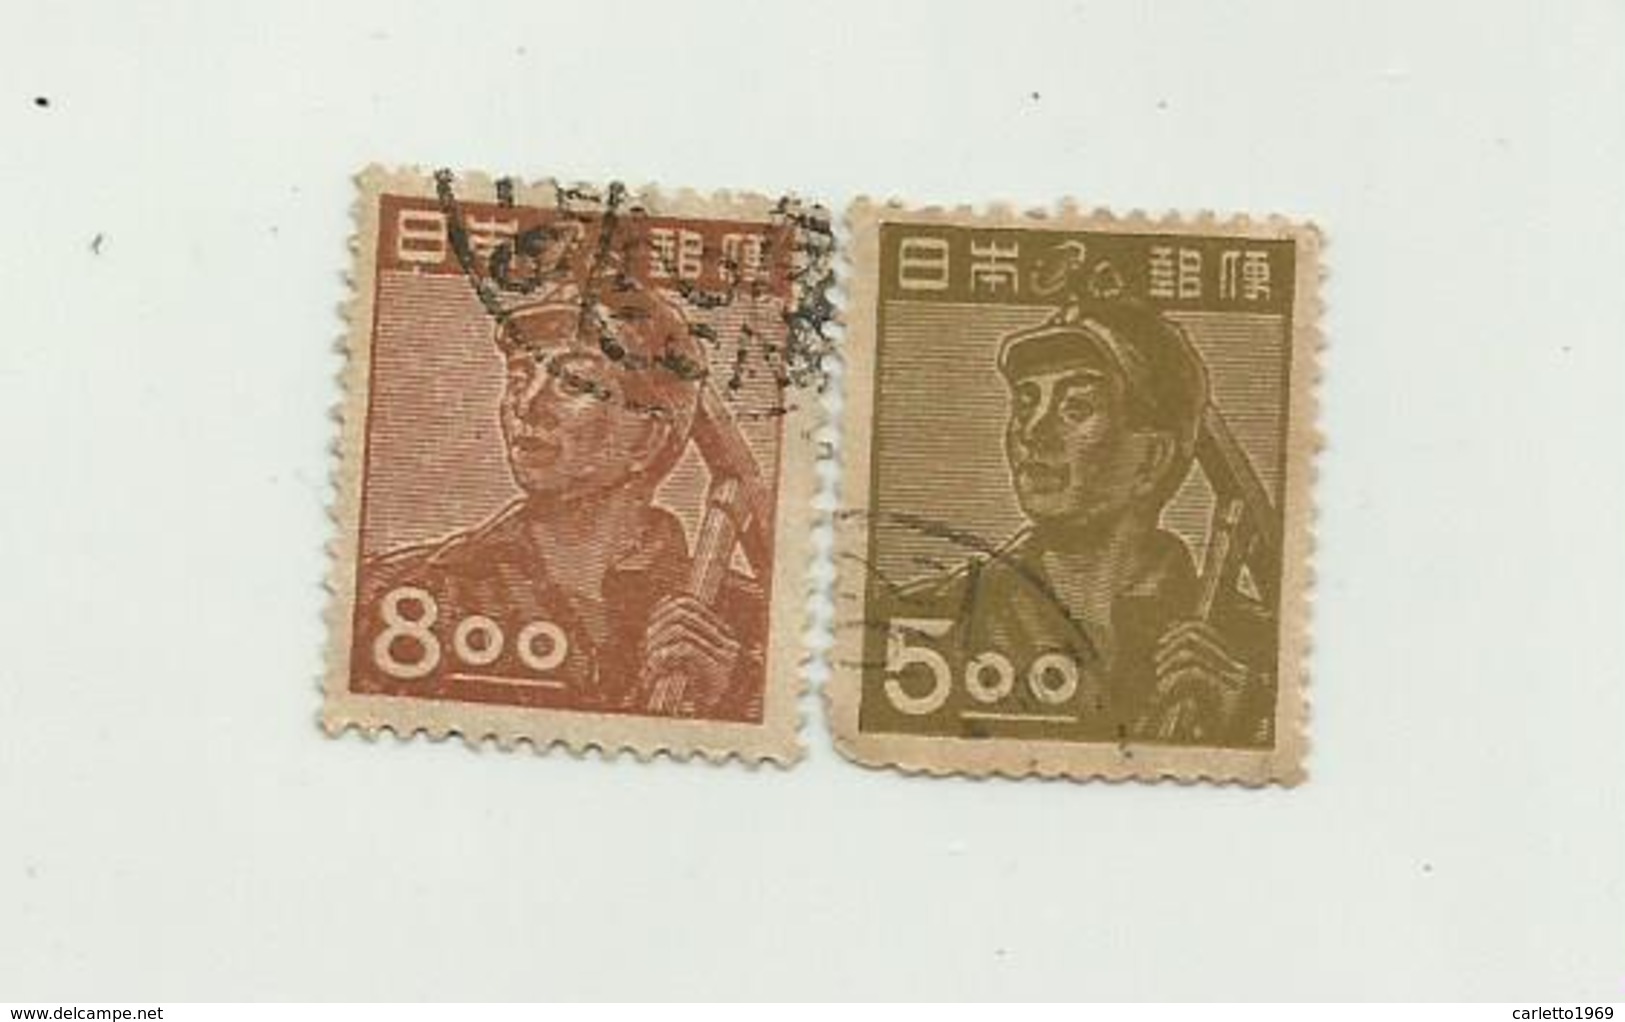 2 Francobolli Giappone Da 800 E 500 - Usati